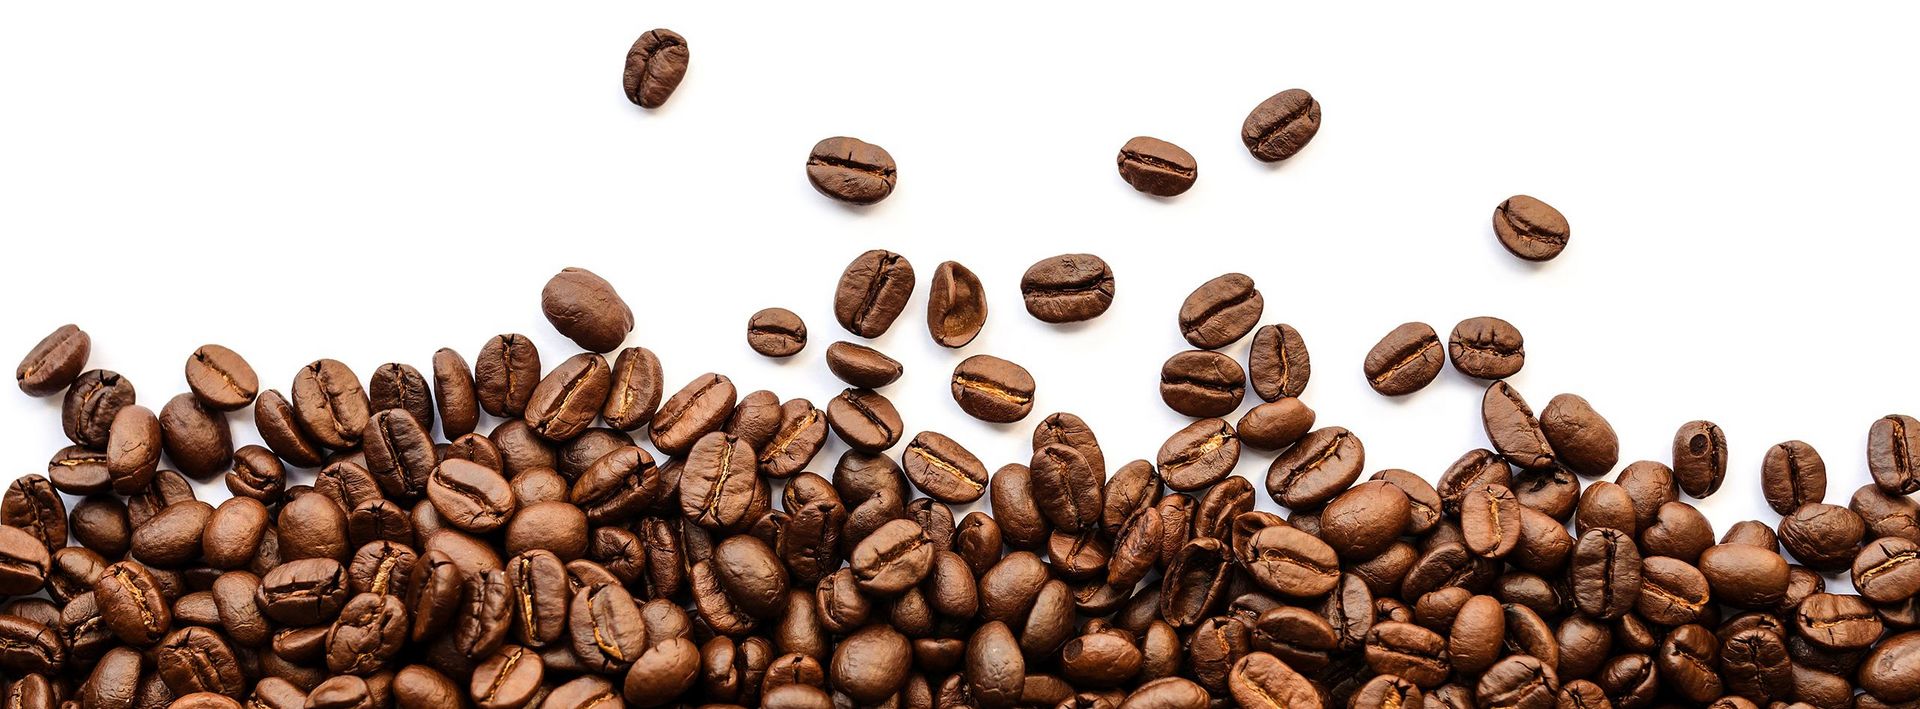 WELCHE KAFFEEMASCHINE IST DIE RICHTIGE?